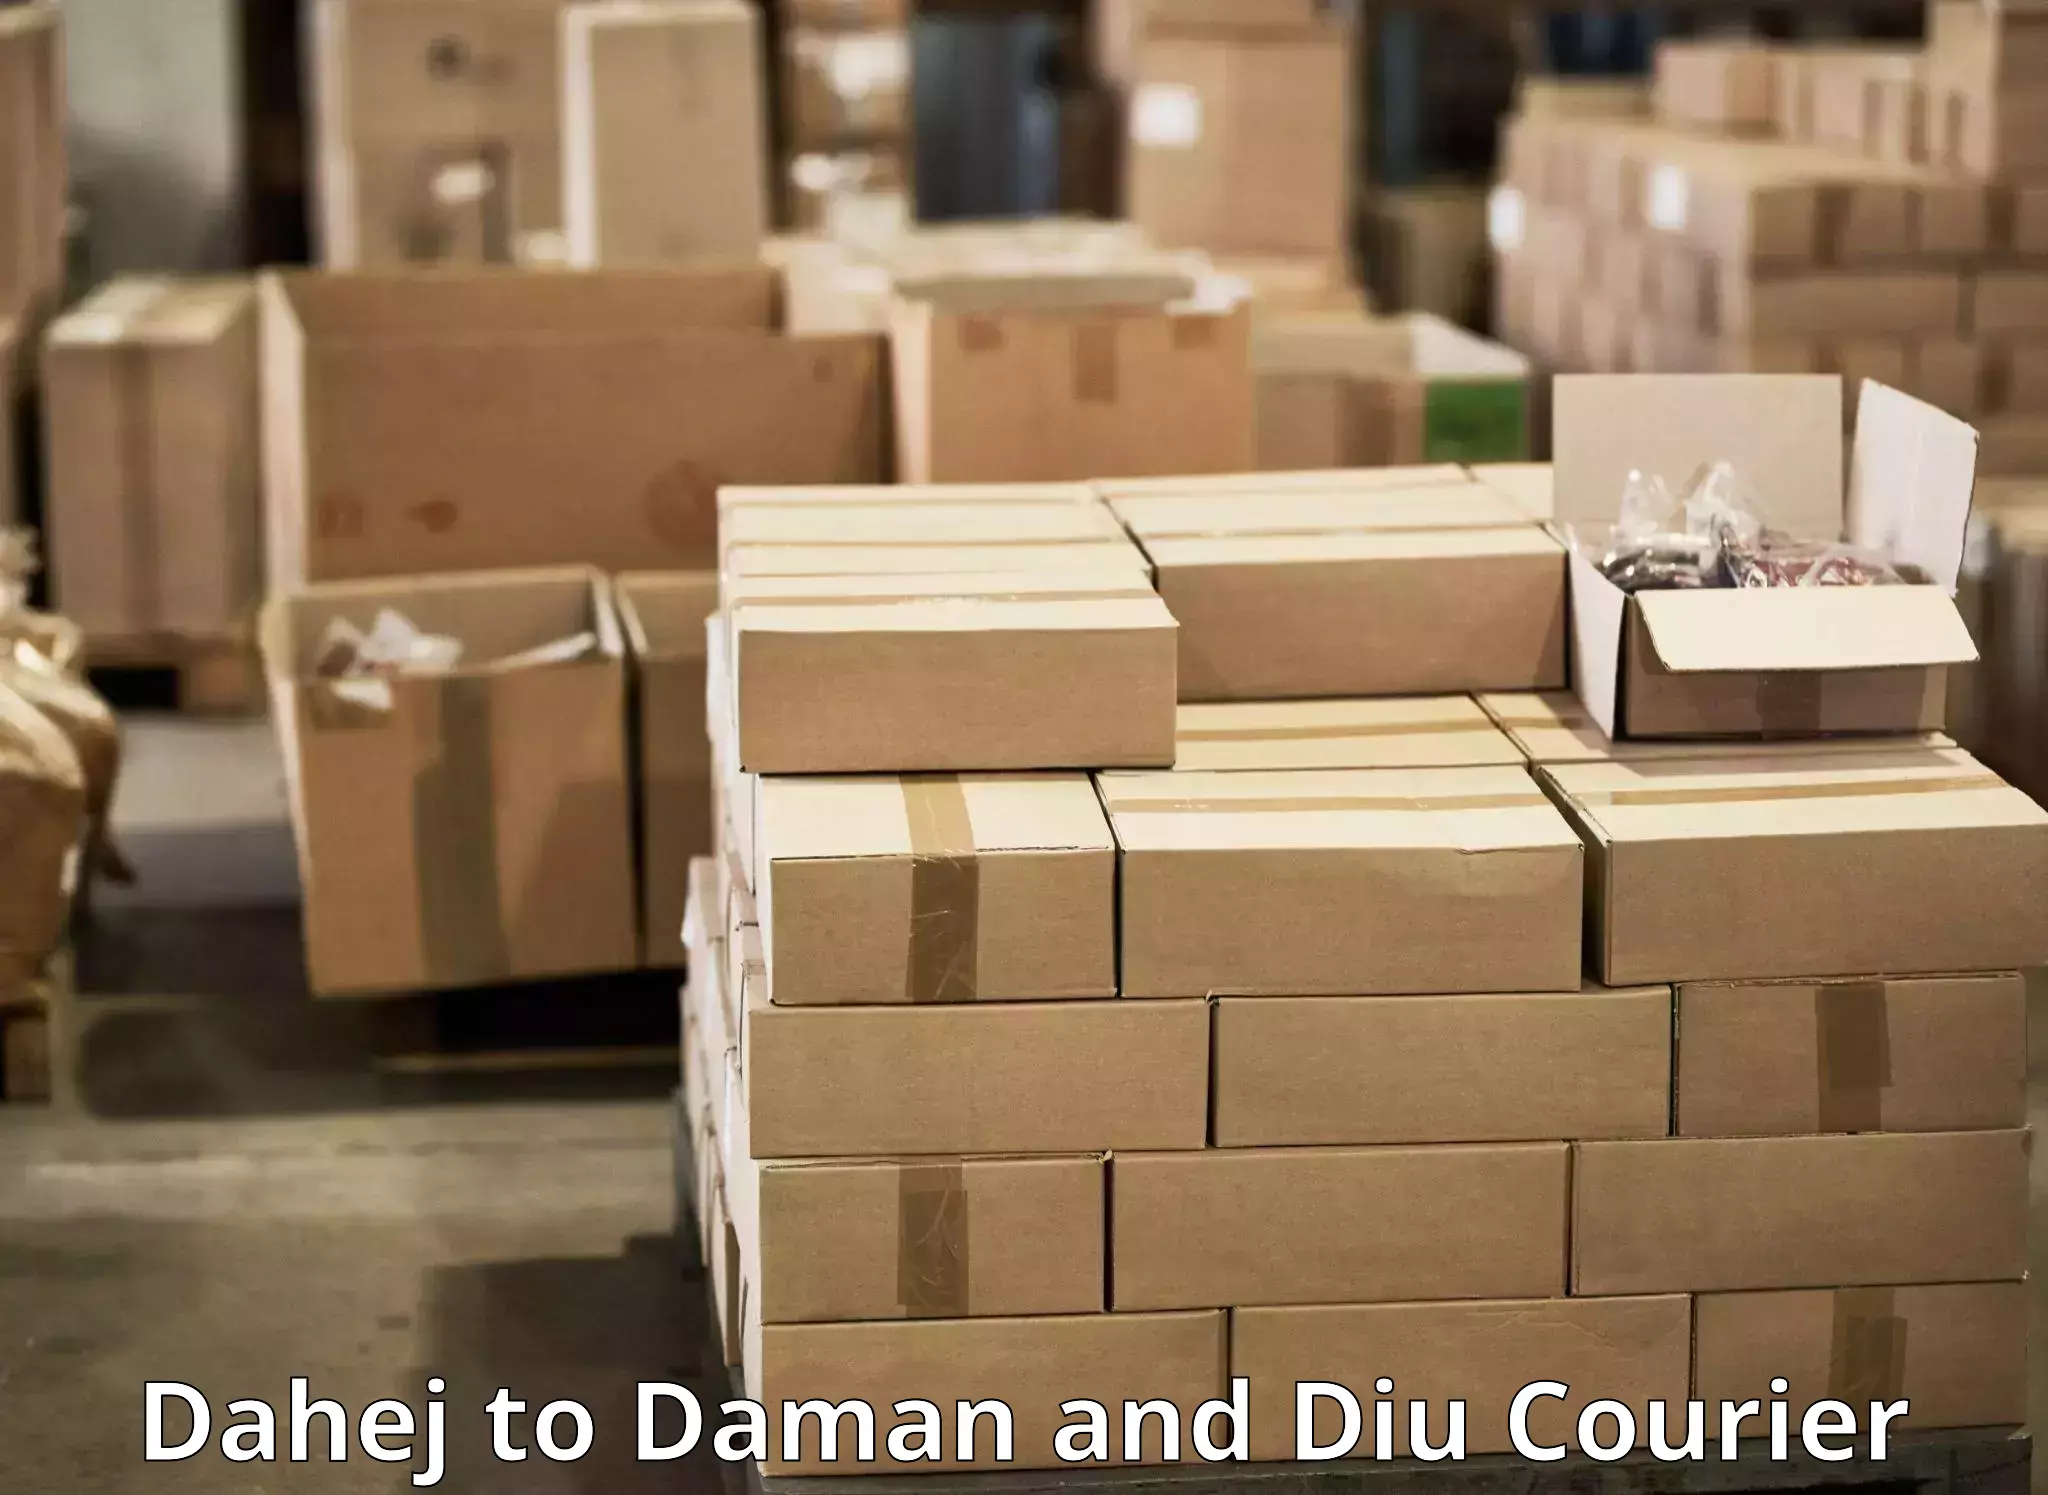 Tech-enabled shipping Dahej to Daman and Diu